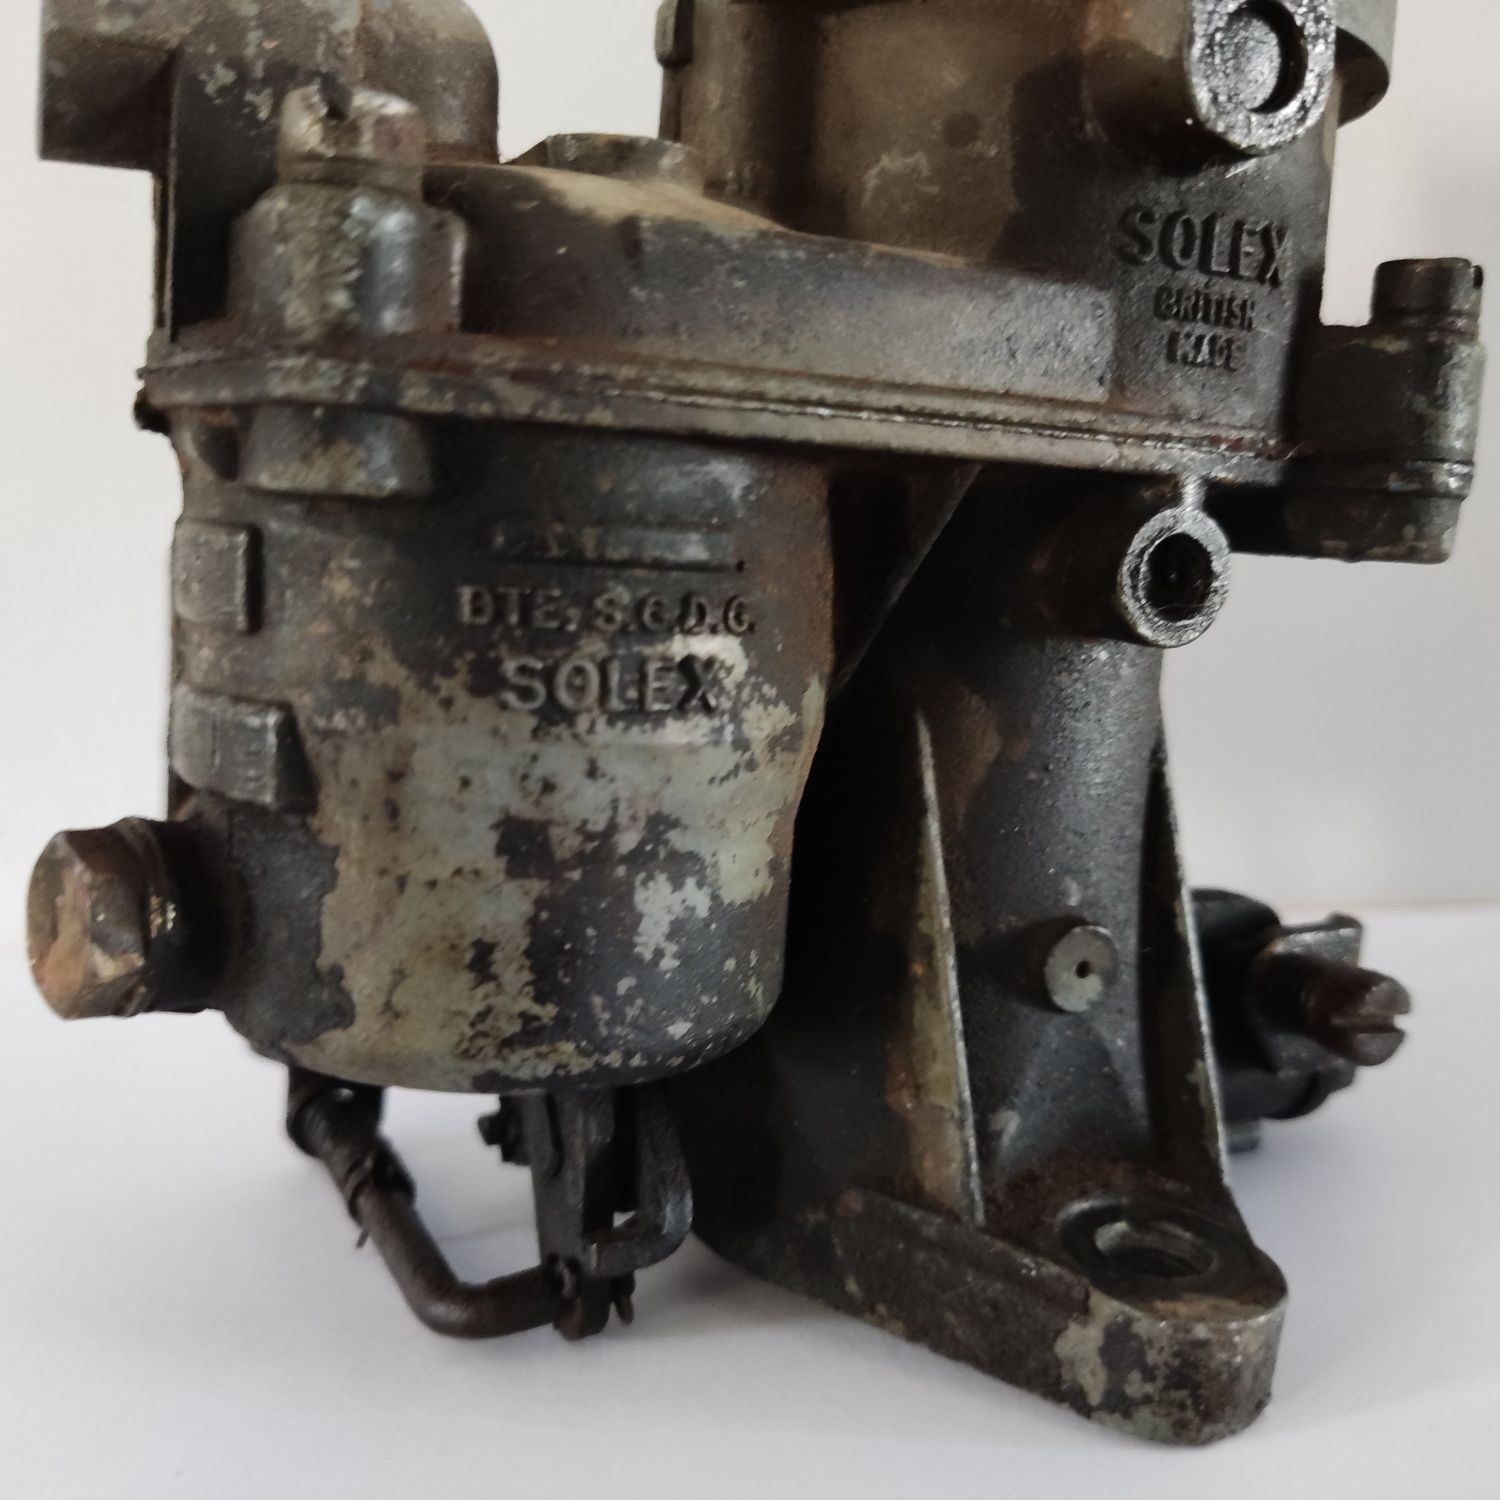 Carburador antigo Solex British Made BTE. S.G.D.G